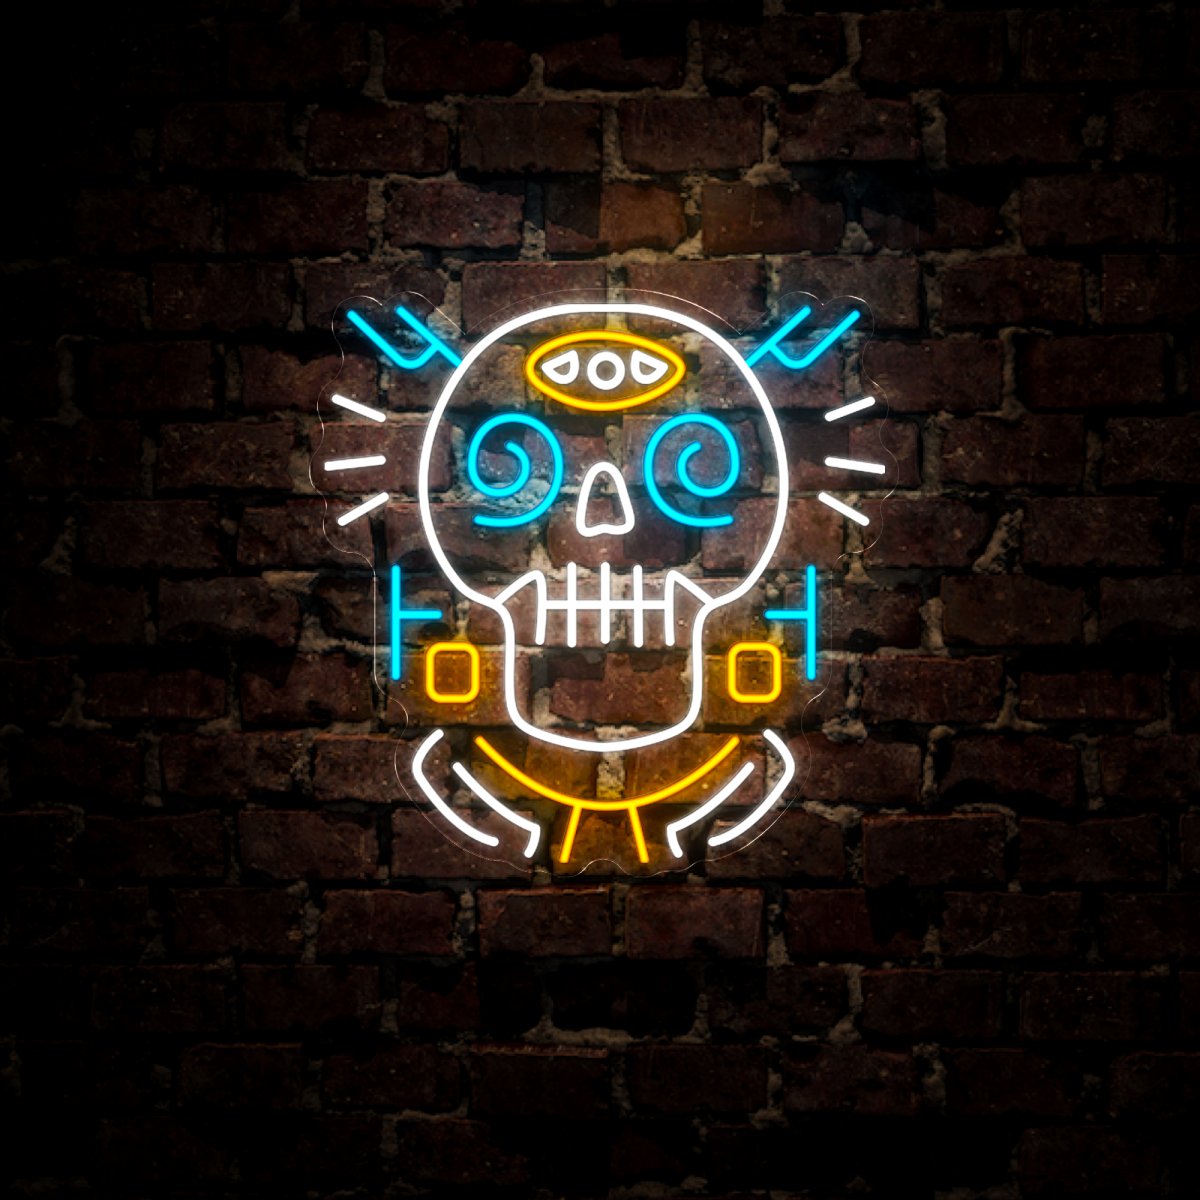 Hipster Skull Neon Sign - Reels Custom